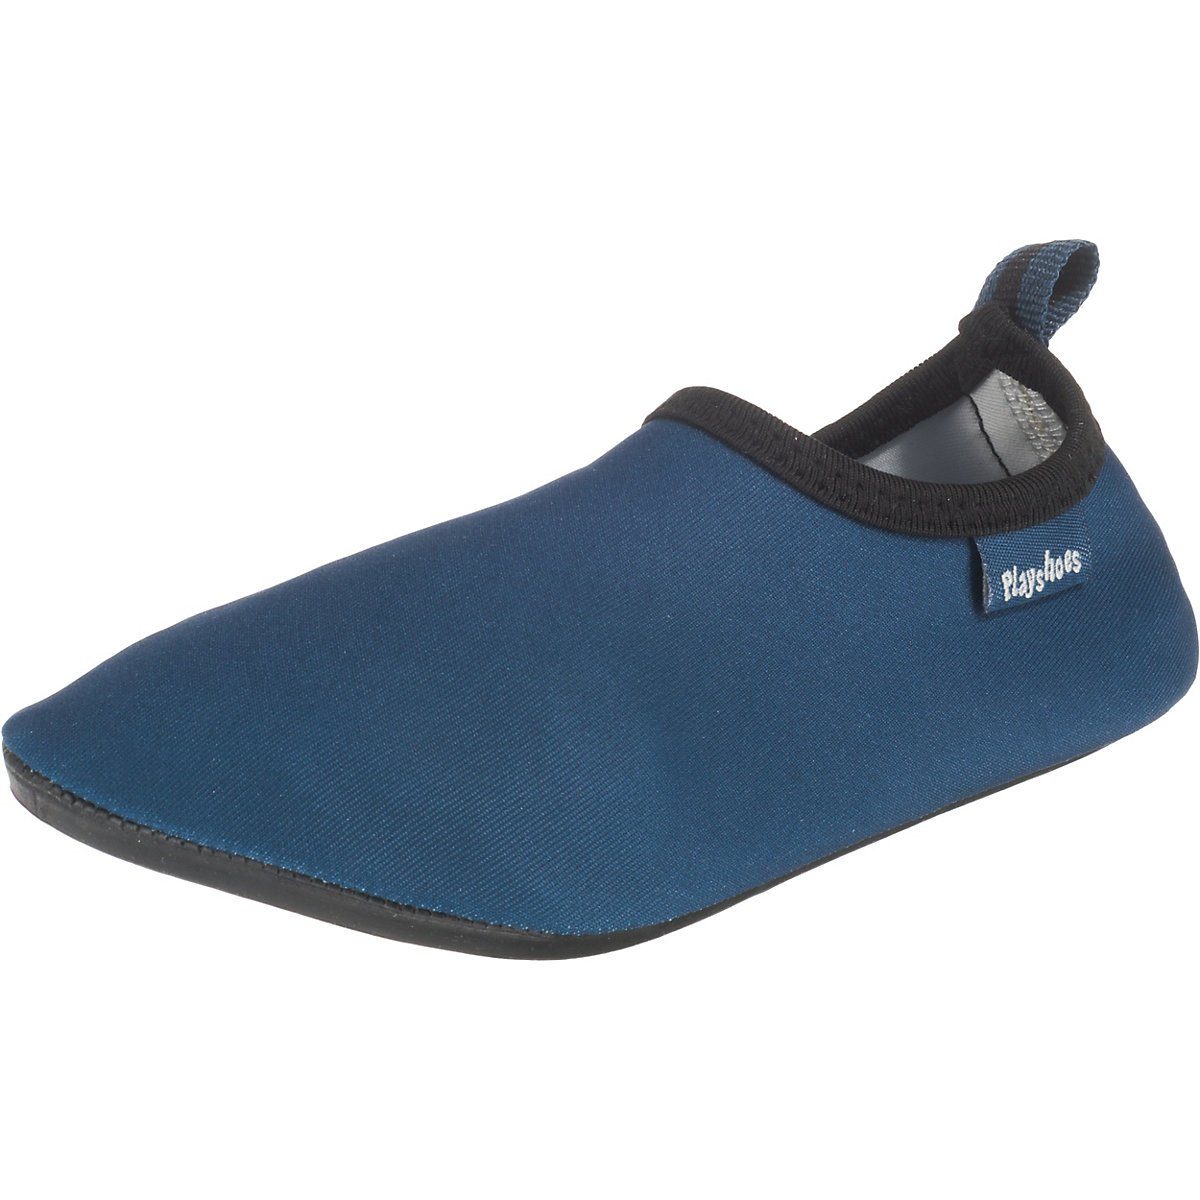 Playshoes Badeschuhe Wasserschuhe Schwimmschuhe, blau Badeschuh Passform, Sohle Barfuß-Schuh flexible Uni mit rutschhemmender